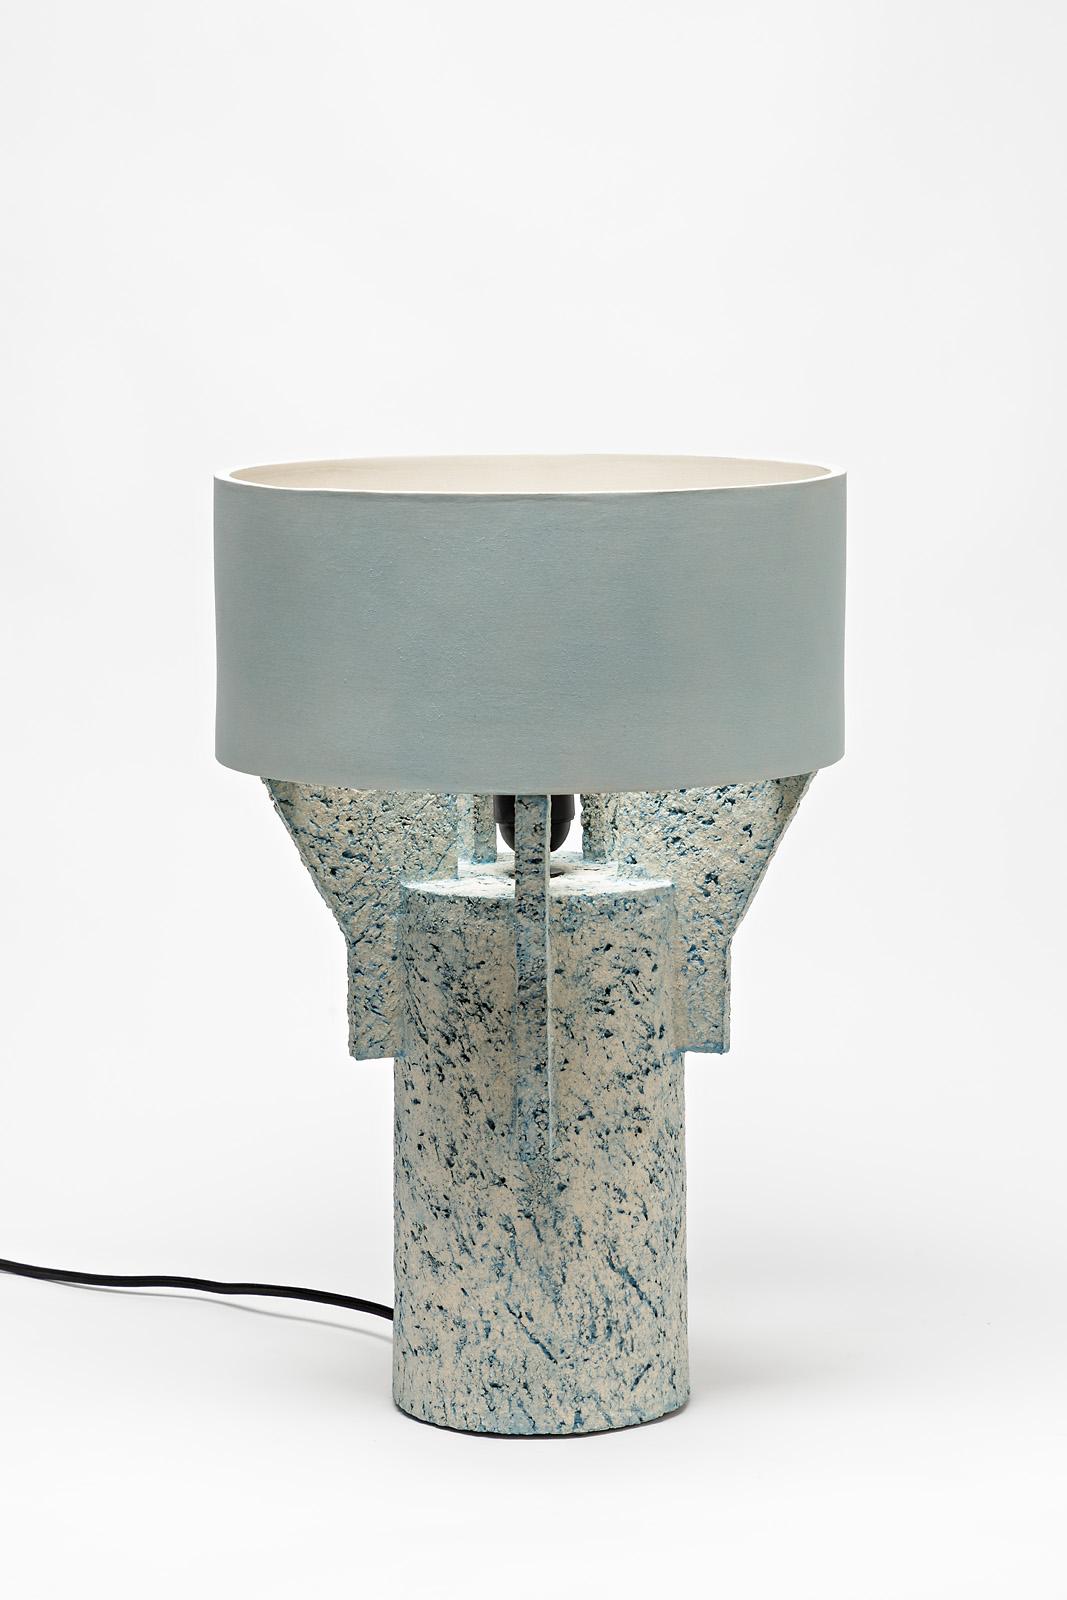 Eine Tischlampe aus Keramik von Denis Castaing mit blauer Glasur.
Der Sockel und der Lampenschirm sind aus Keramik.
Wird mit einer europäischen elektrischen Anlage verkauft.
Perfekter Originalzustand.
2019.
Unter dem Sockel signiert.